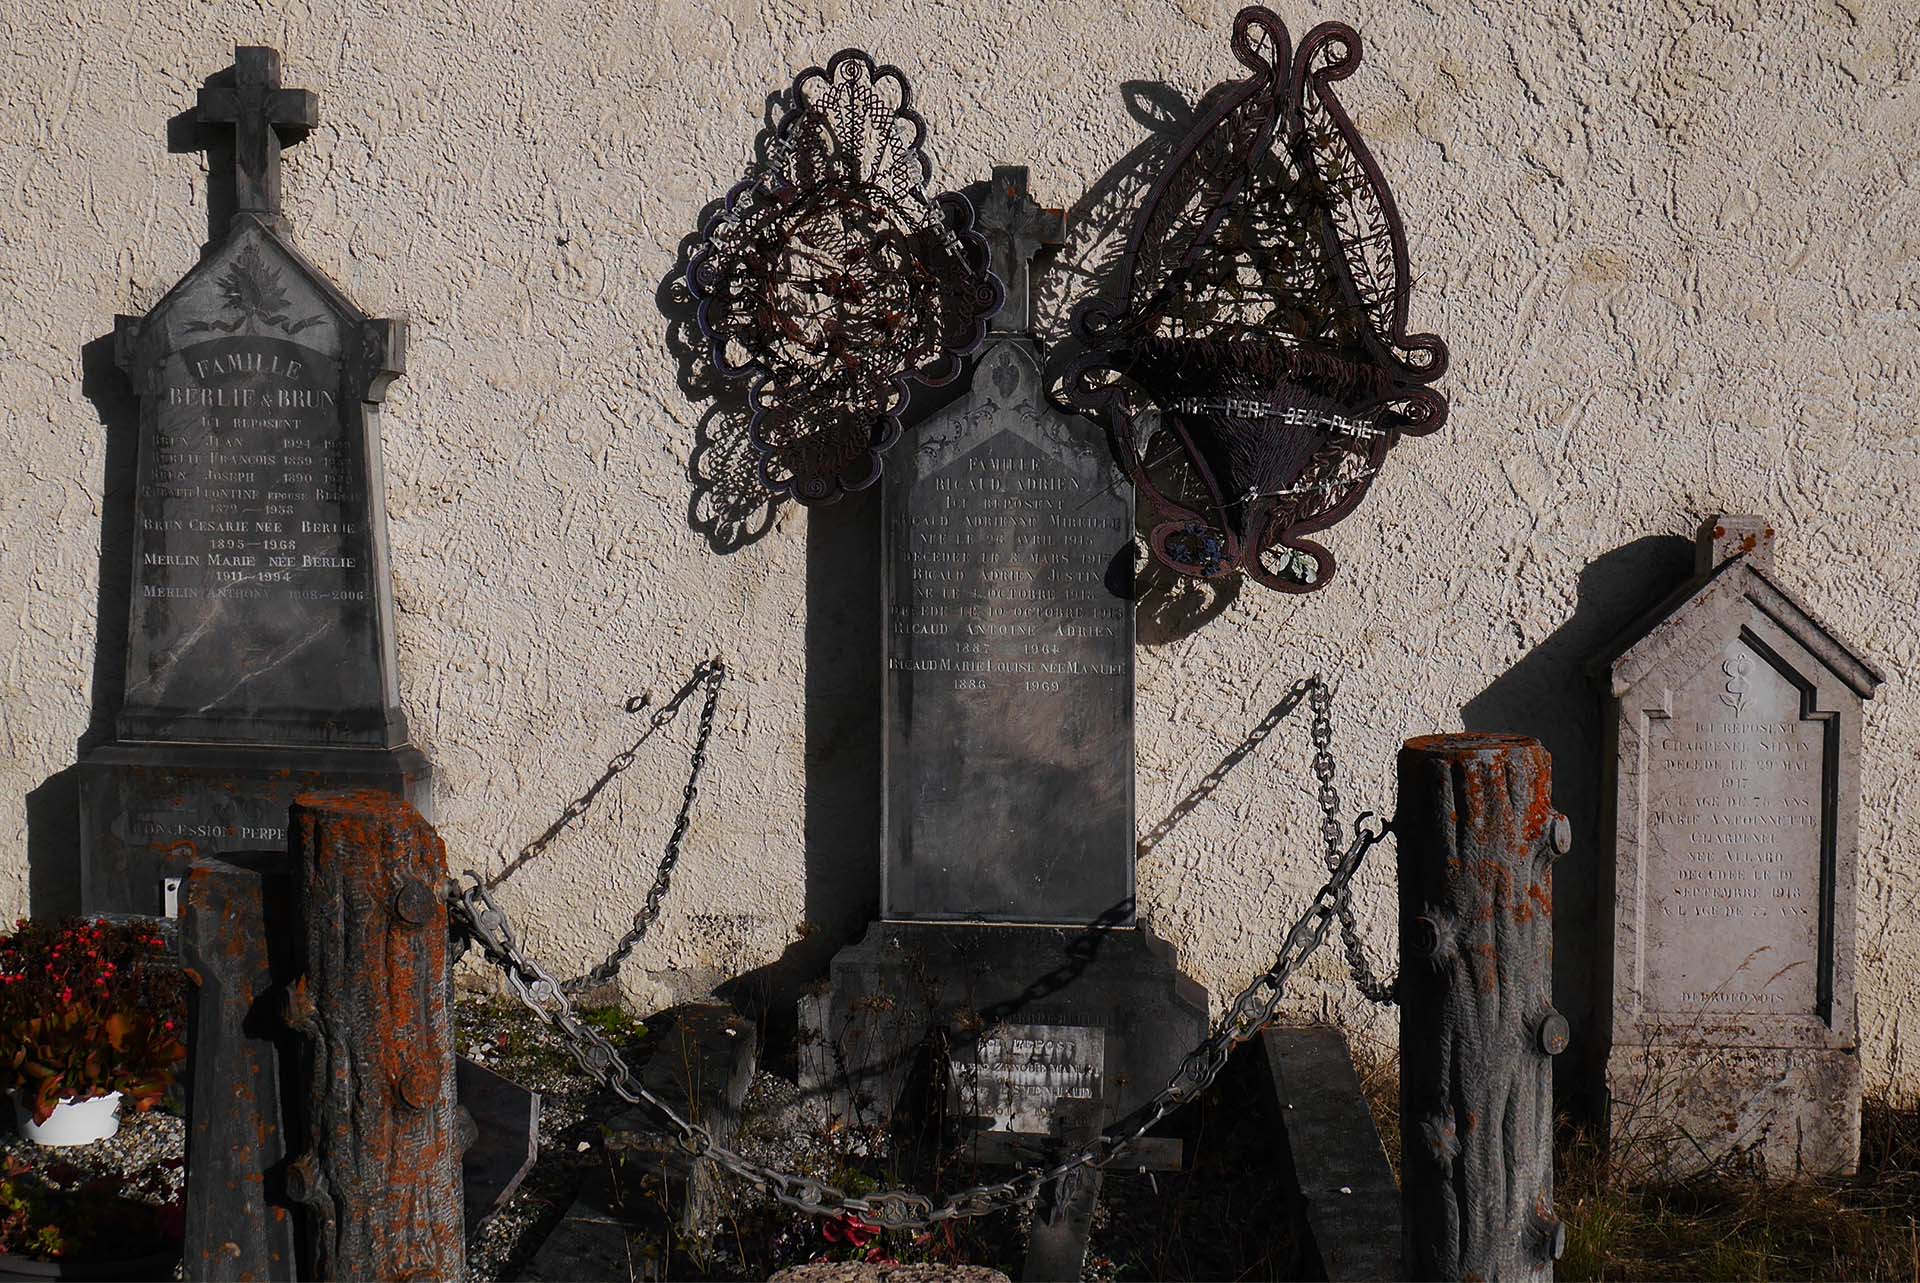 Tombes dans le cimetière de Barcelonnette tombs in Barcelonnette cemetery